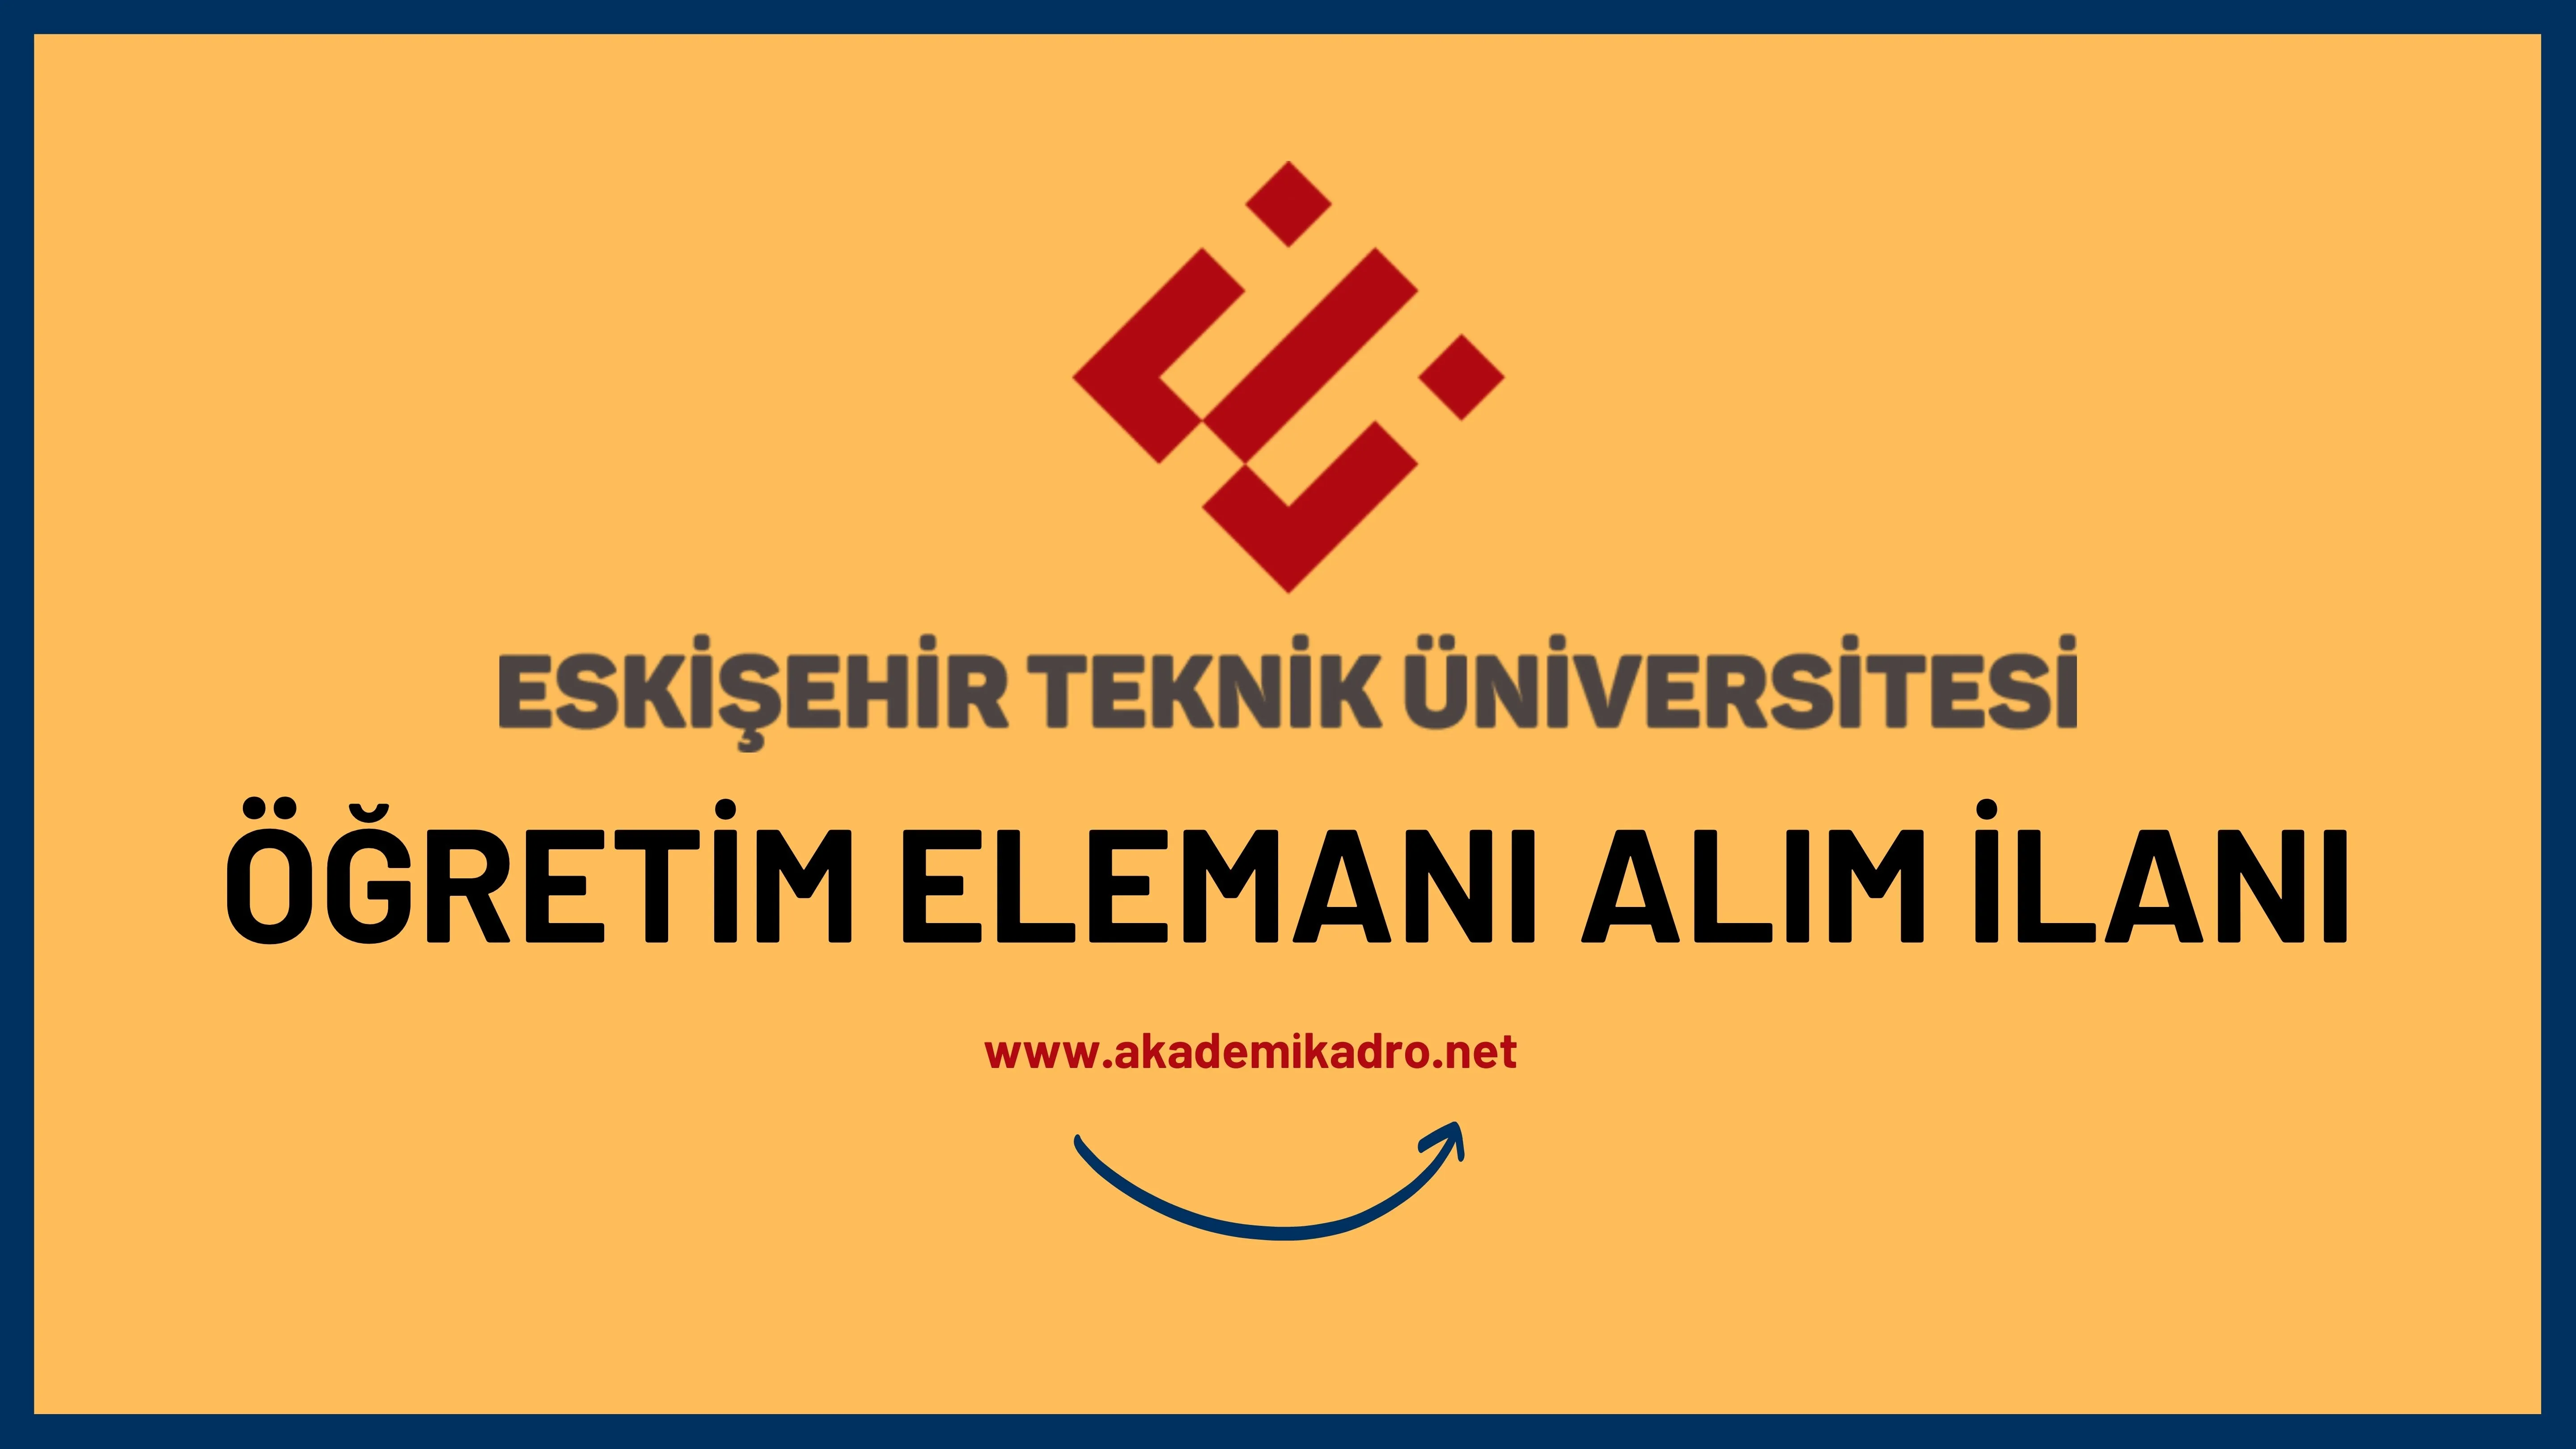 Eskişehir Teknik Üniversitesi 2 Öğretim görevlisi, 10 Araştırma görevlisi ve birçok alandan 25 Öğretim üyesi alacak.